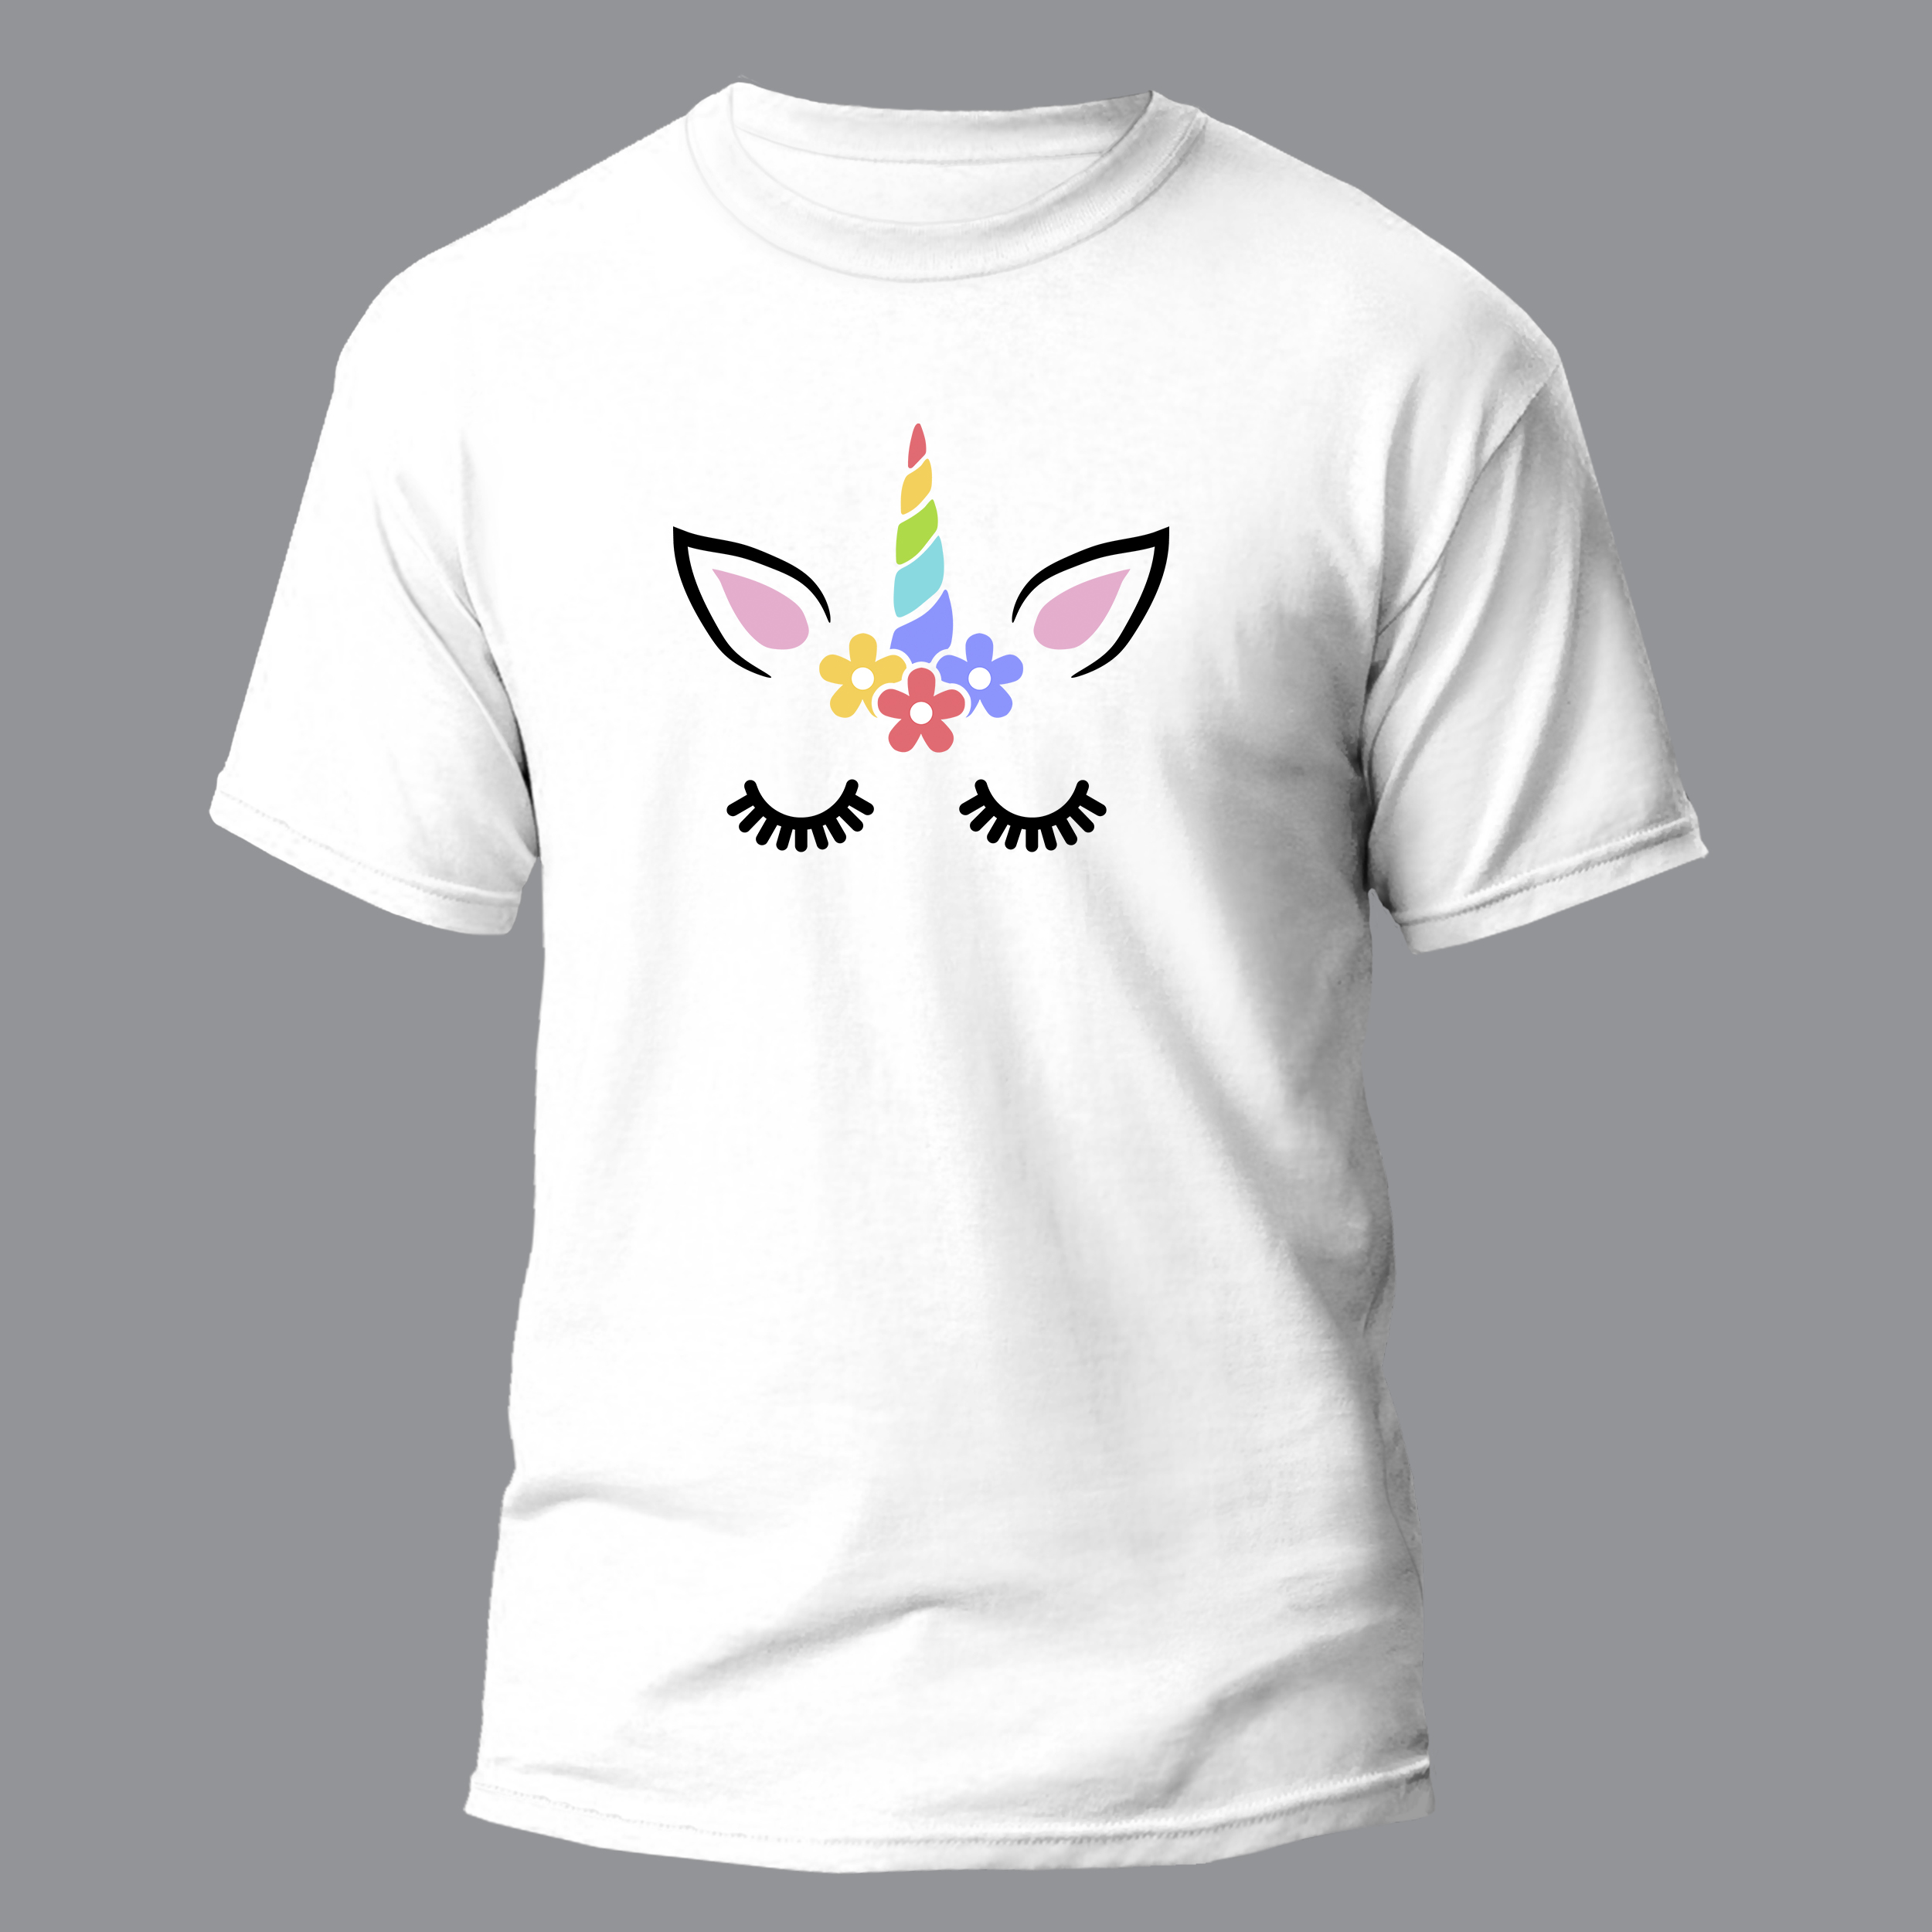 تی شرت آستین کوتاه دخترانه مدل Unicorn کد 047